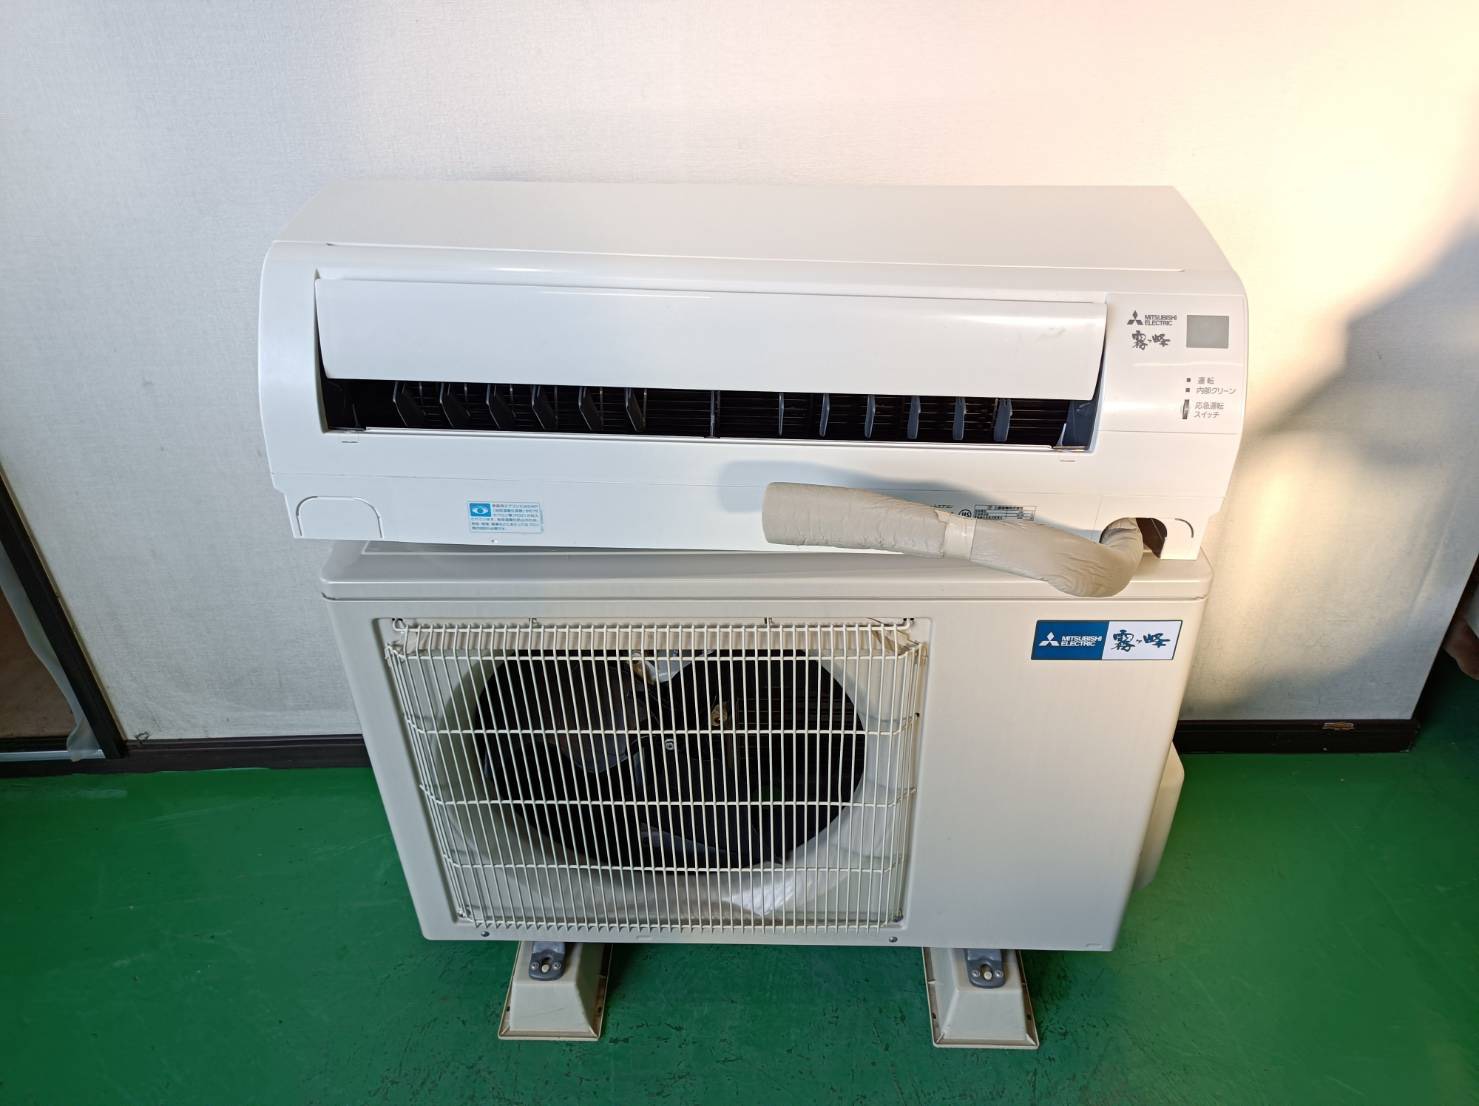 冷暖房/空調沖縄離島以外送料無料 新品三菱エアコンMSZ-GV2217冷暖房6畳用 保証書付